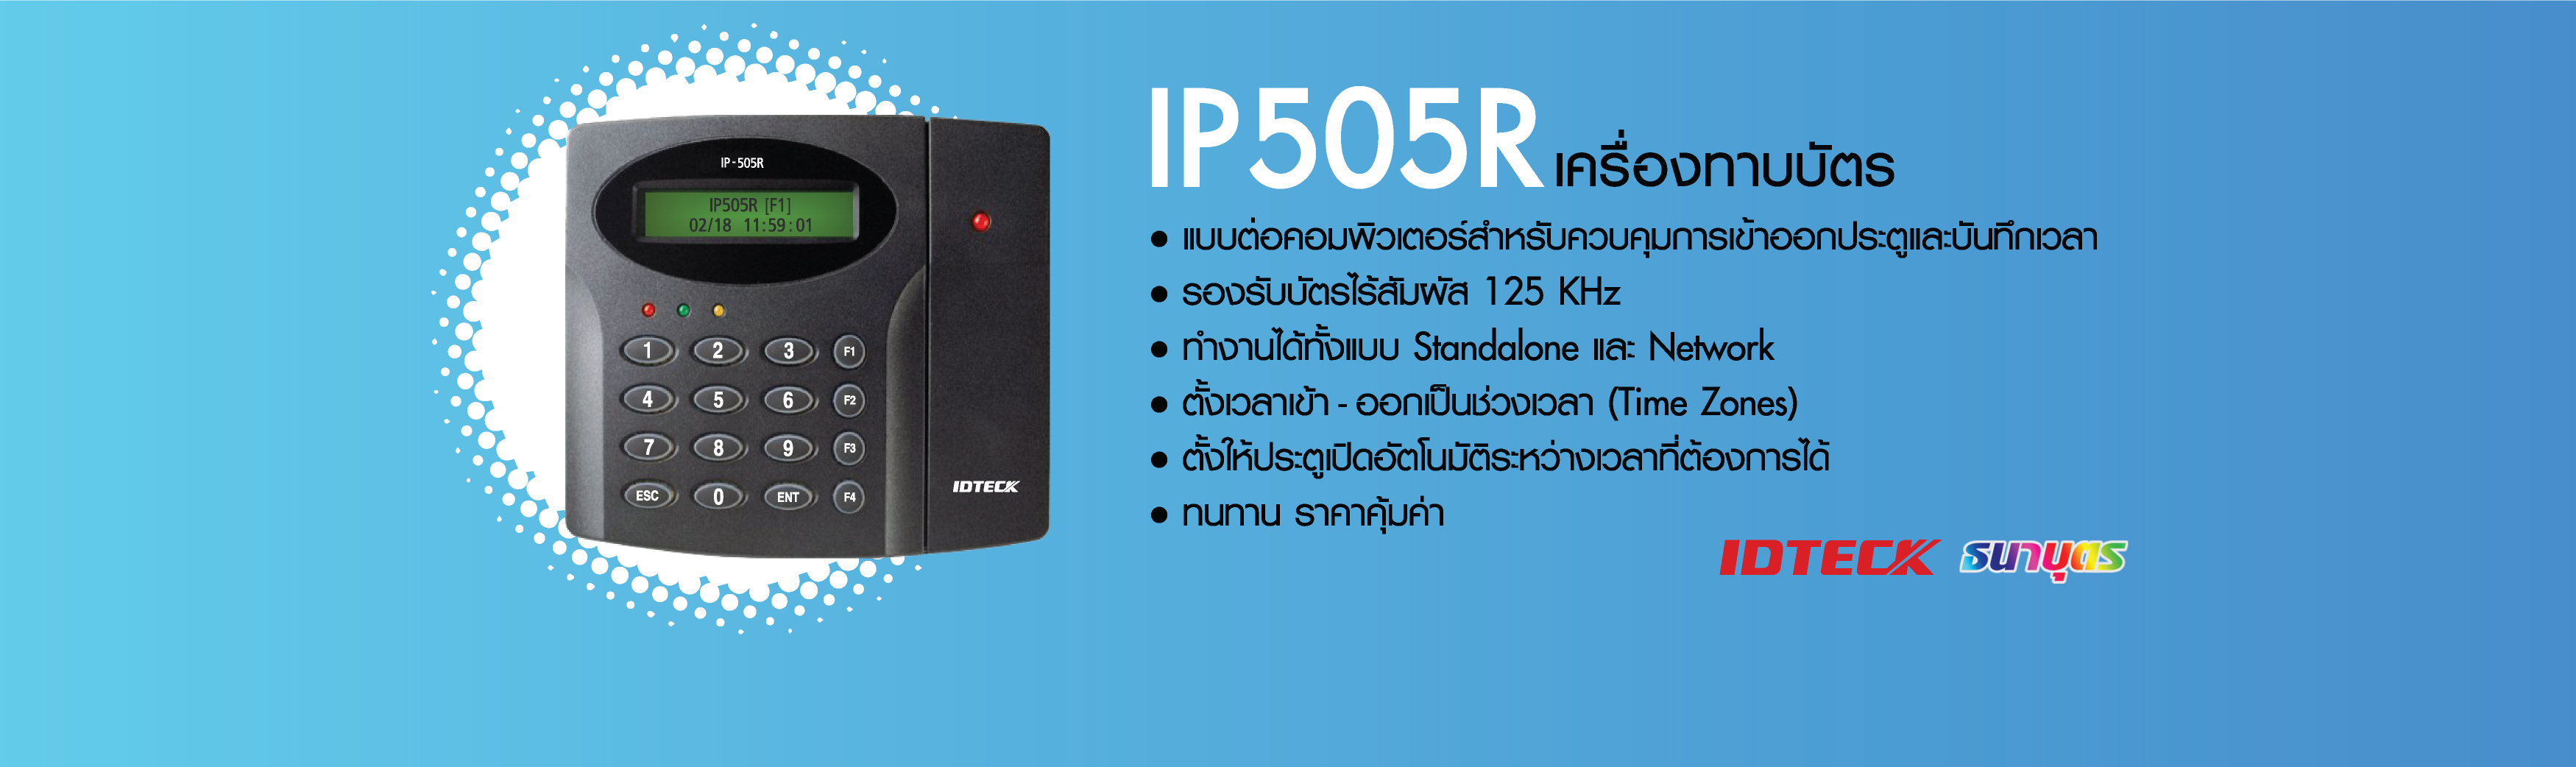 IP505R